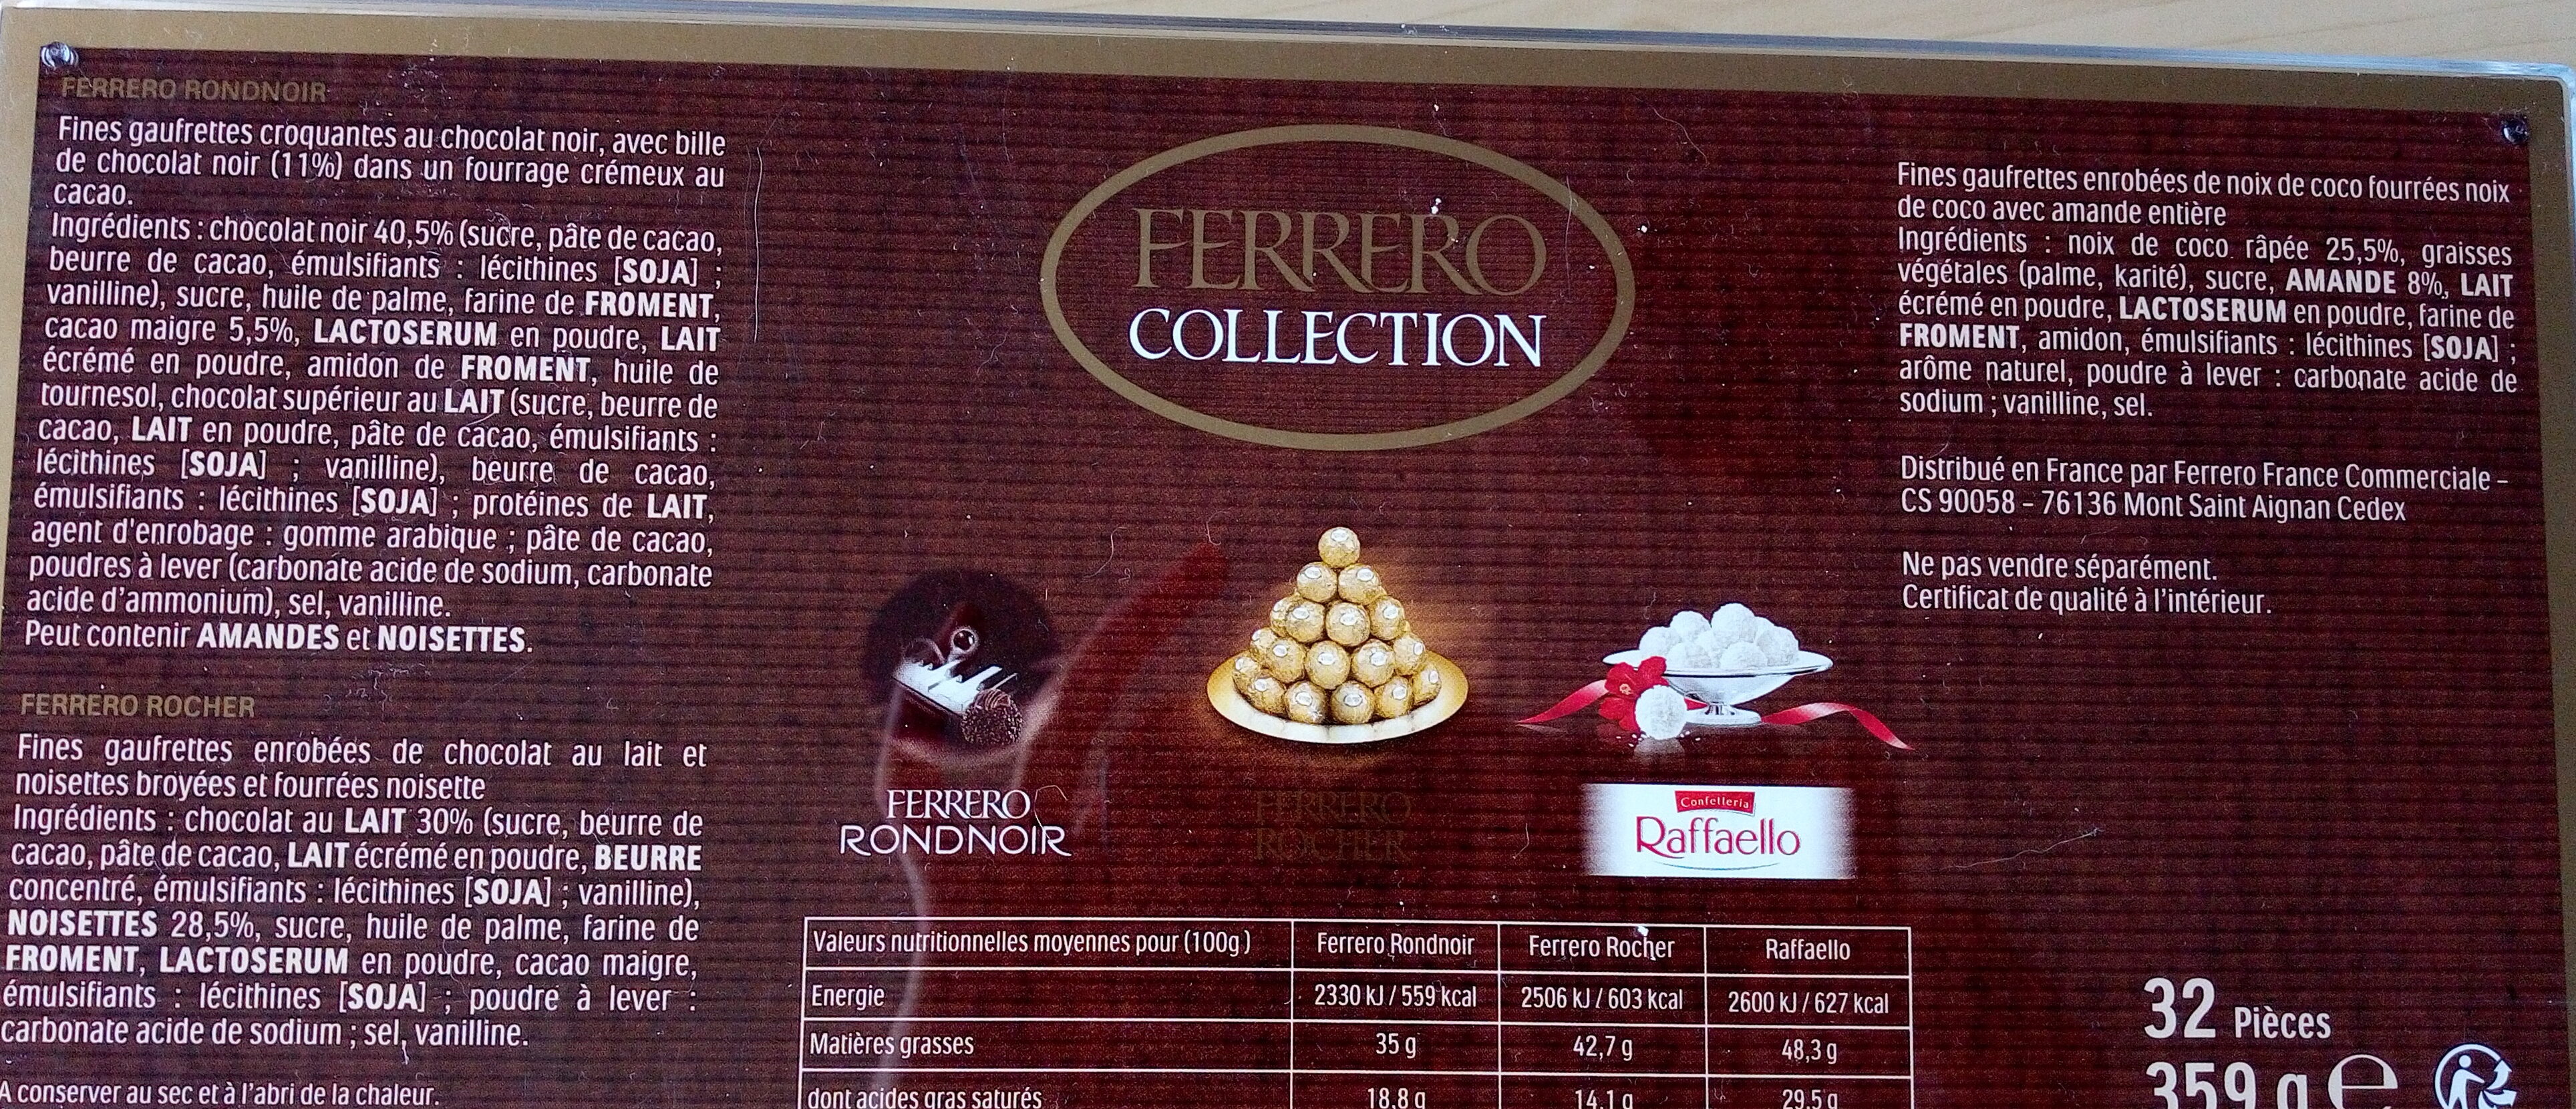 Ferrero collection assortiment de chocolats boite de 32 pieces - Ingrédients